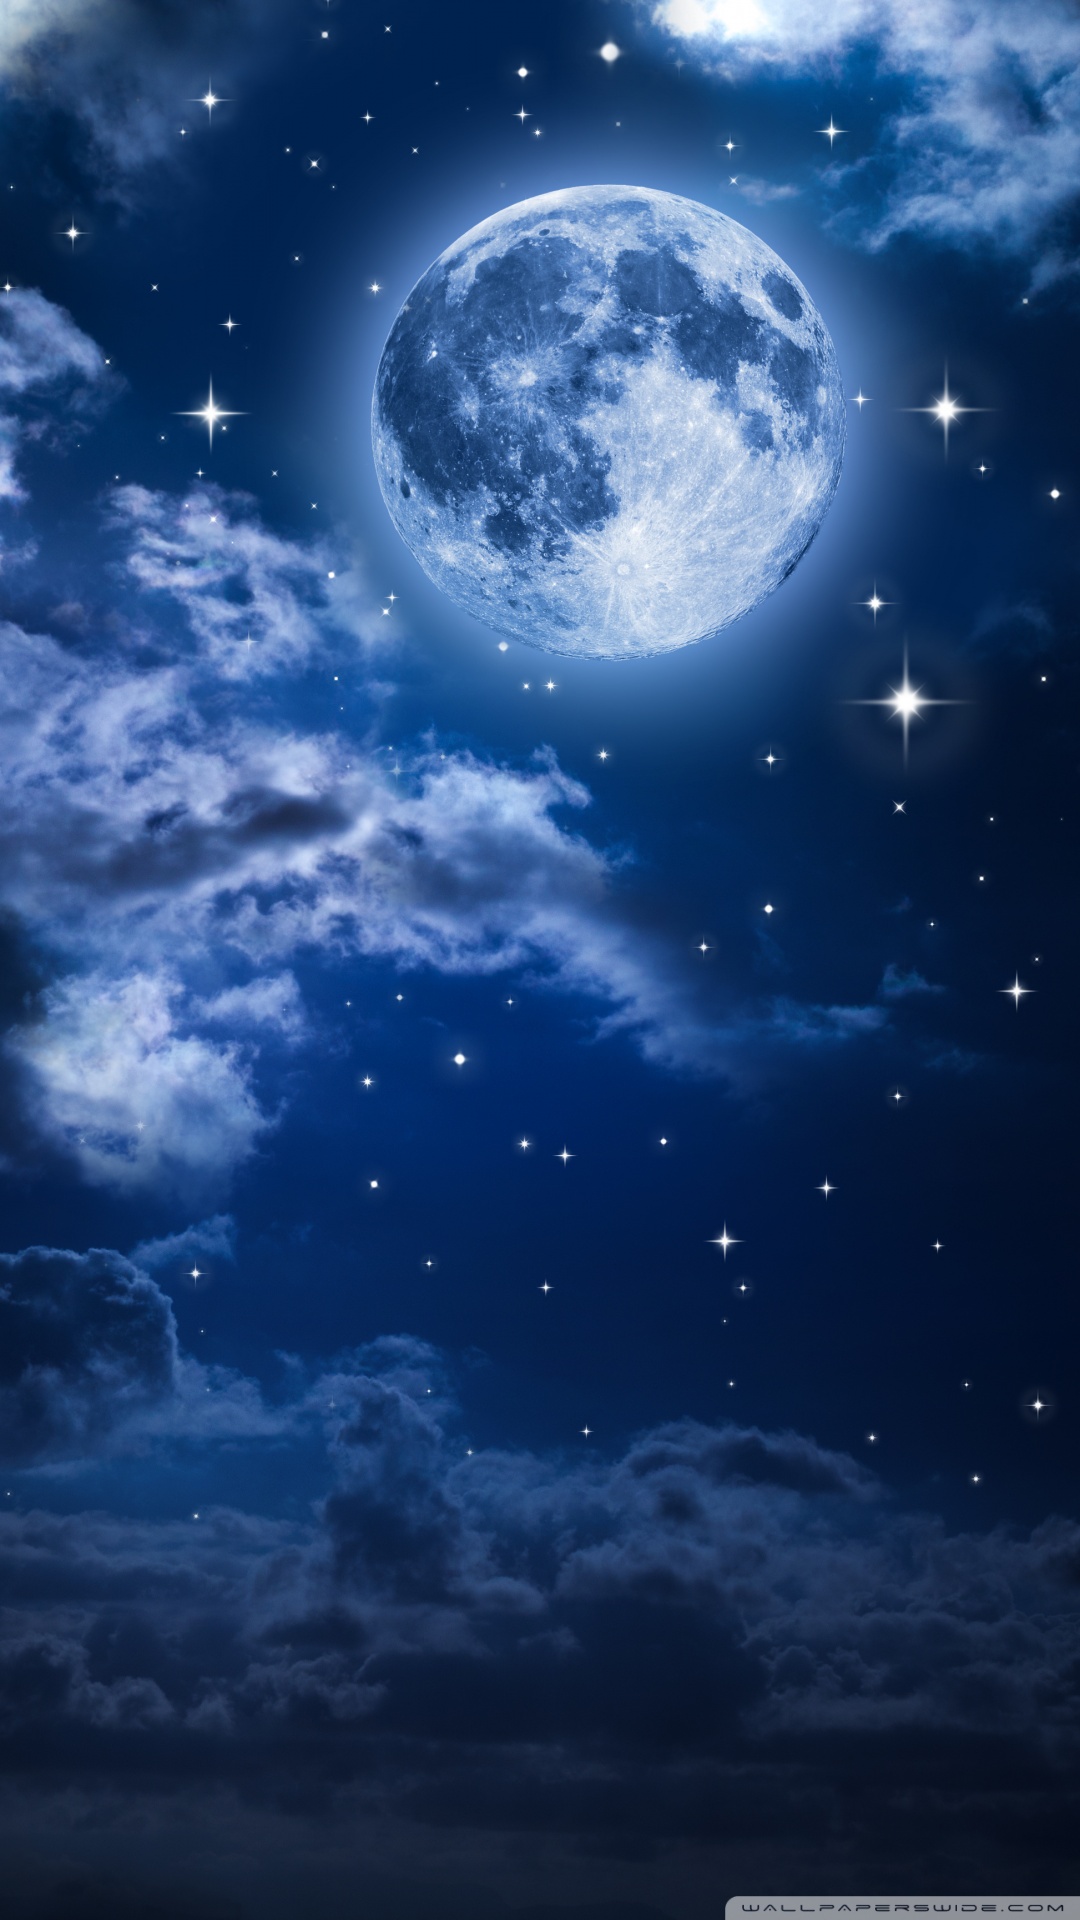 月壁紙ダウンロード,空,雰囲気,月光,天体,光